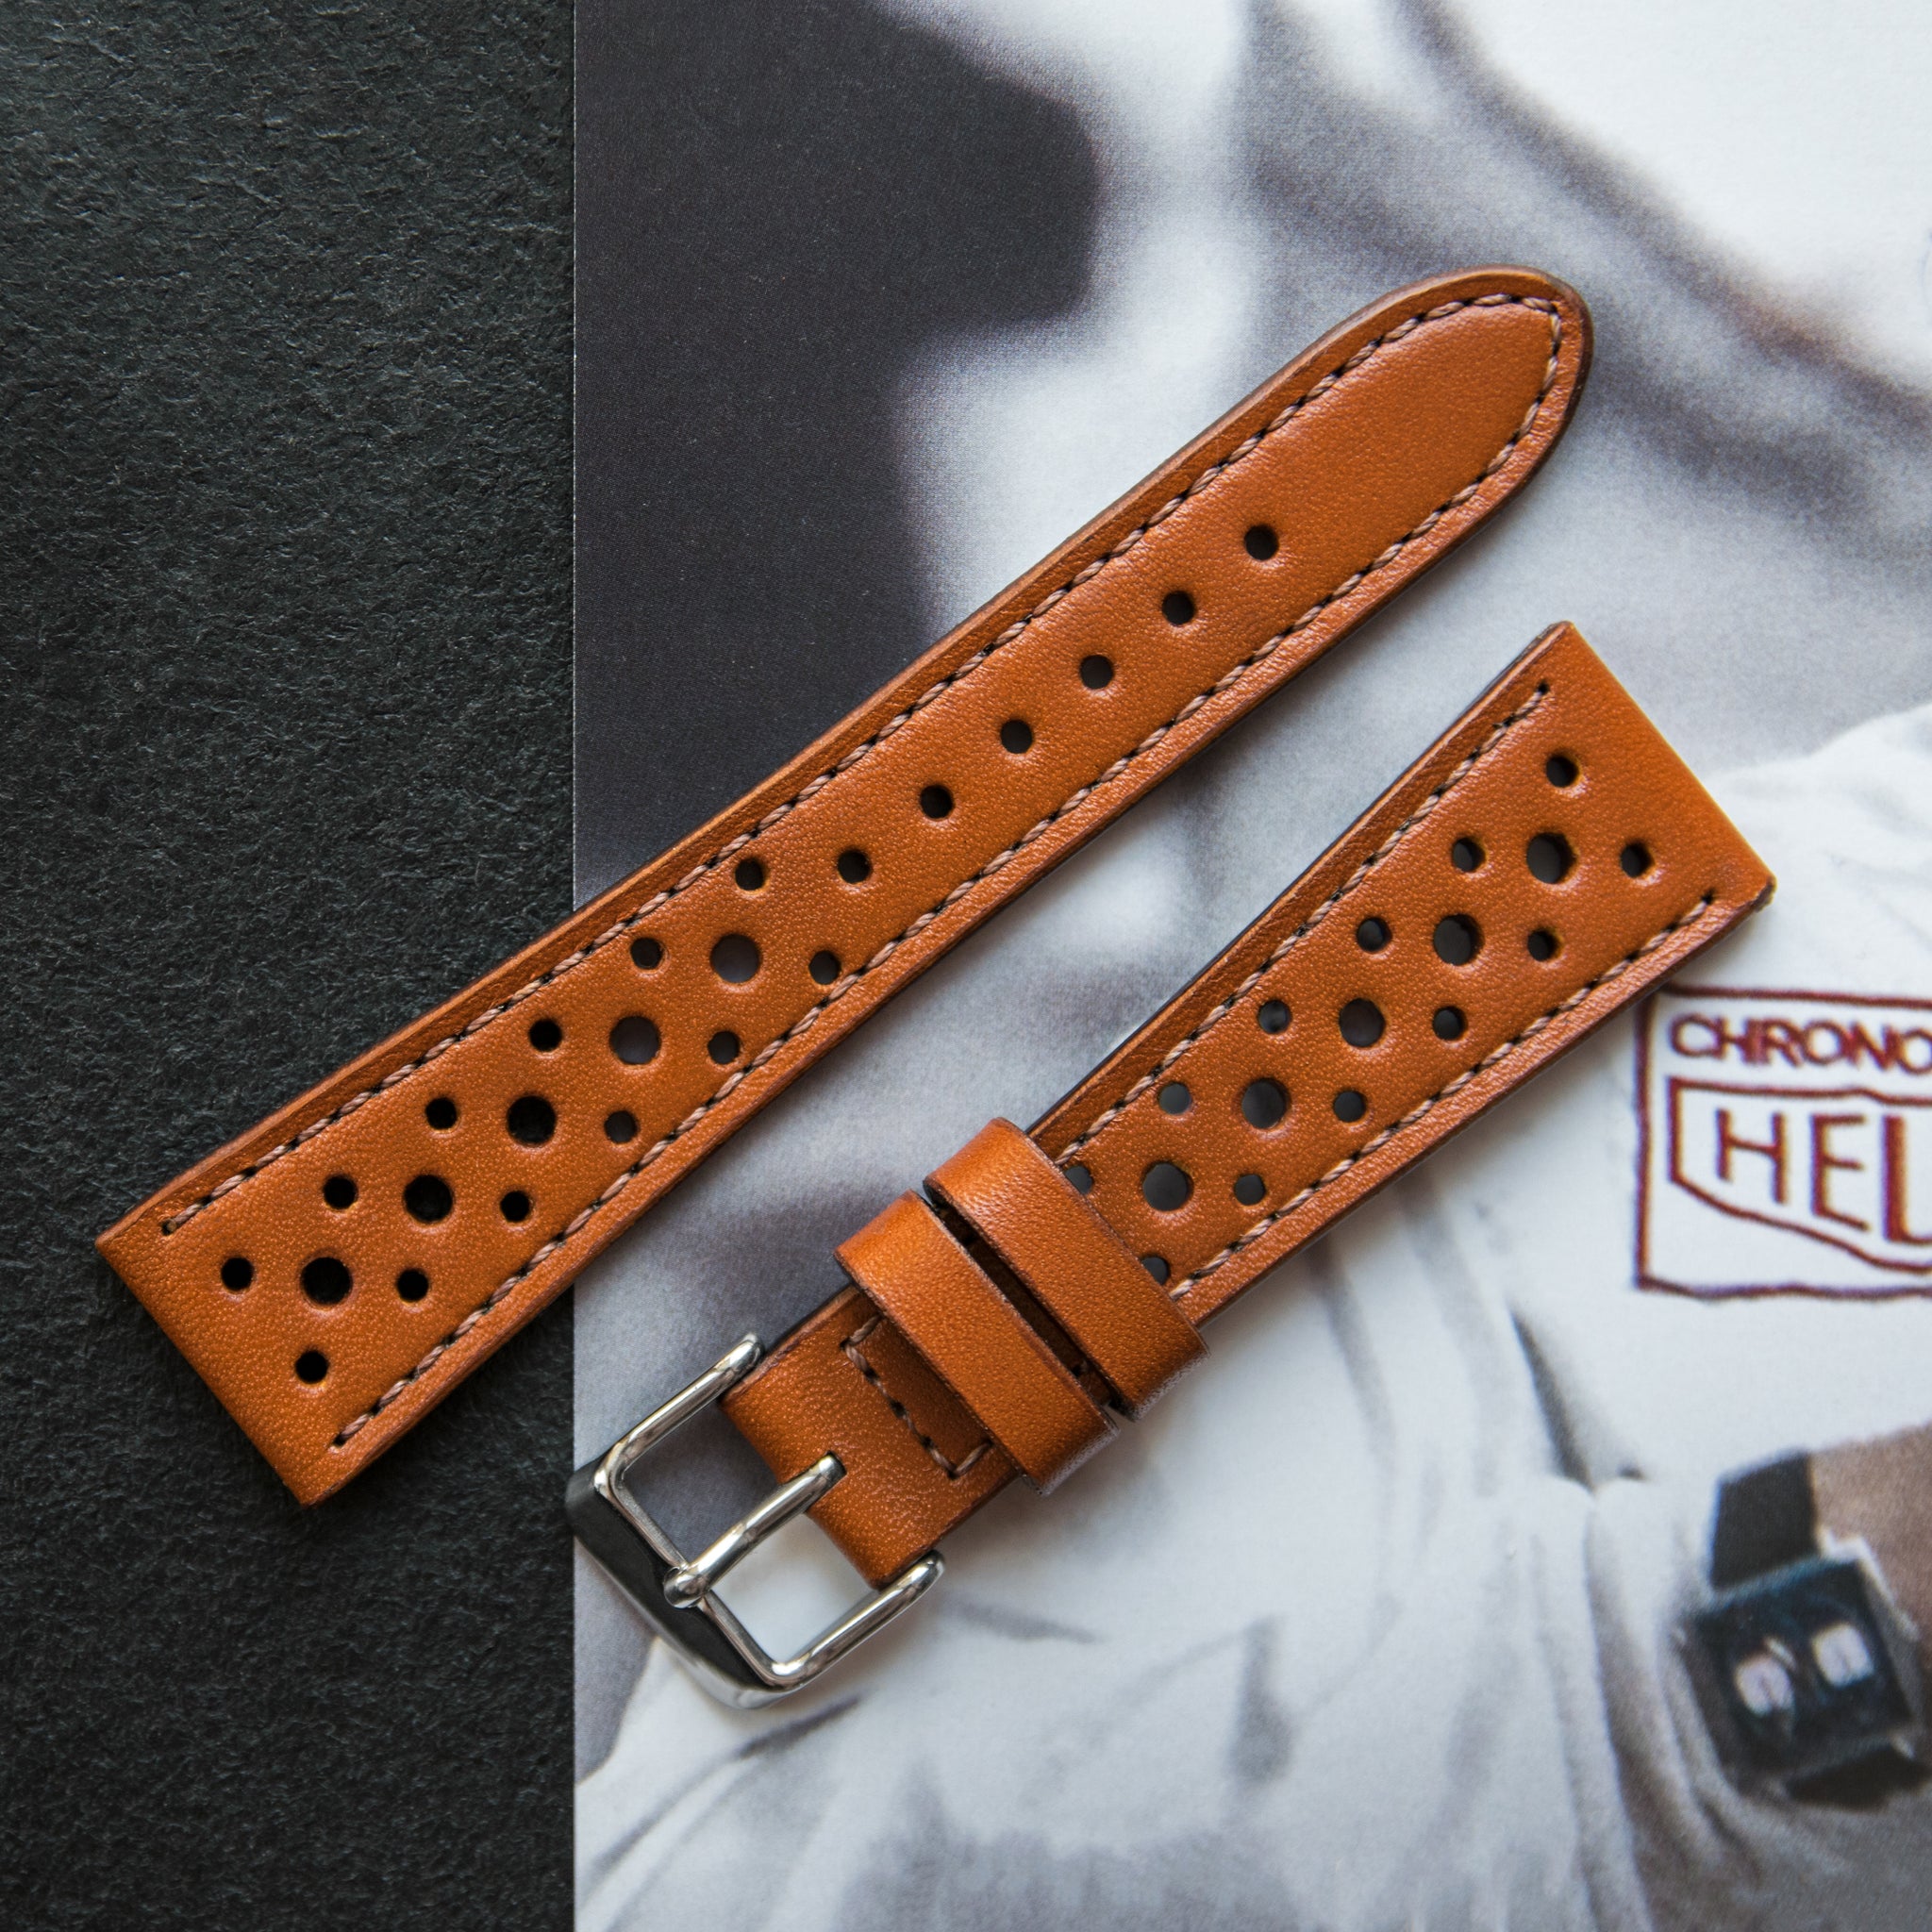 Heuer Monaco Chronograph leather strap